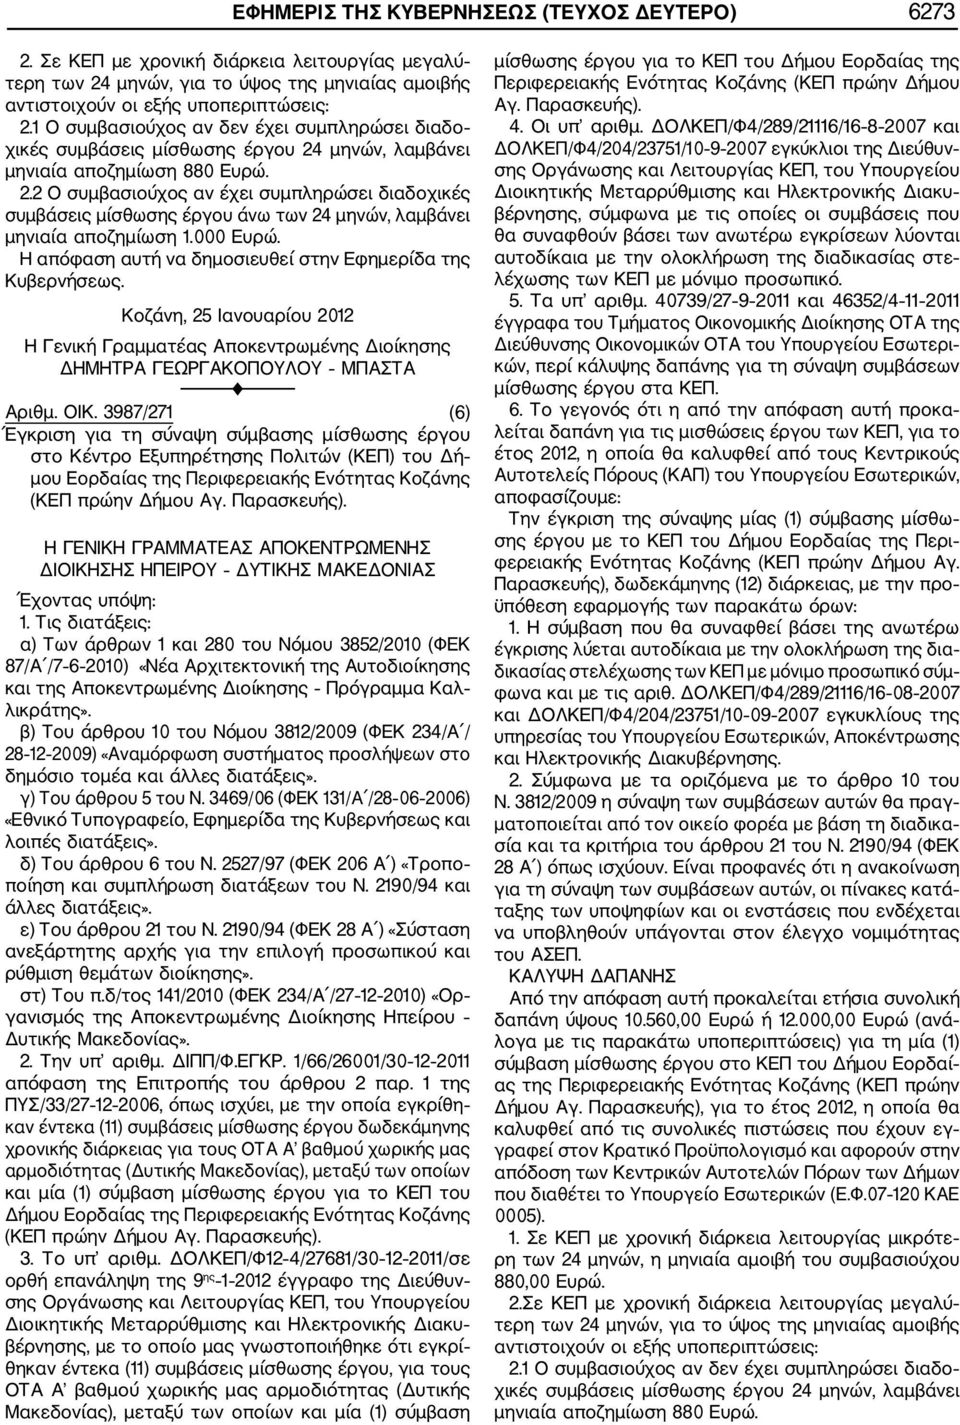 1 της ΠΥΣ/33/27 12 2006, όπως ισχύει, με την οποία εγκρίθη καν έντεκα (11) συμβάσεις μίσθωσης έργου δωδεκάμηνης χρονικής διάρκειας για τους ΟΤΑ Α βαθμού χωρικής μας αρμοδιότητας (Δυτικής Μακεδονίας),